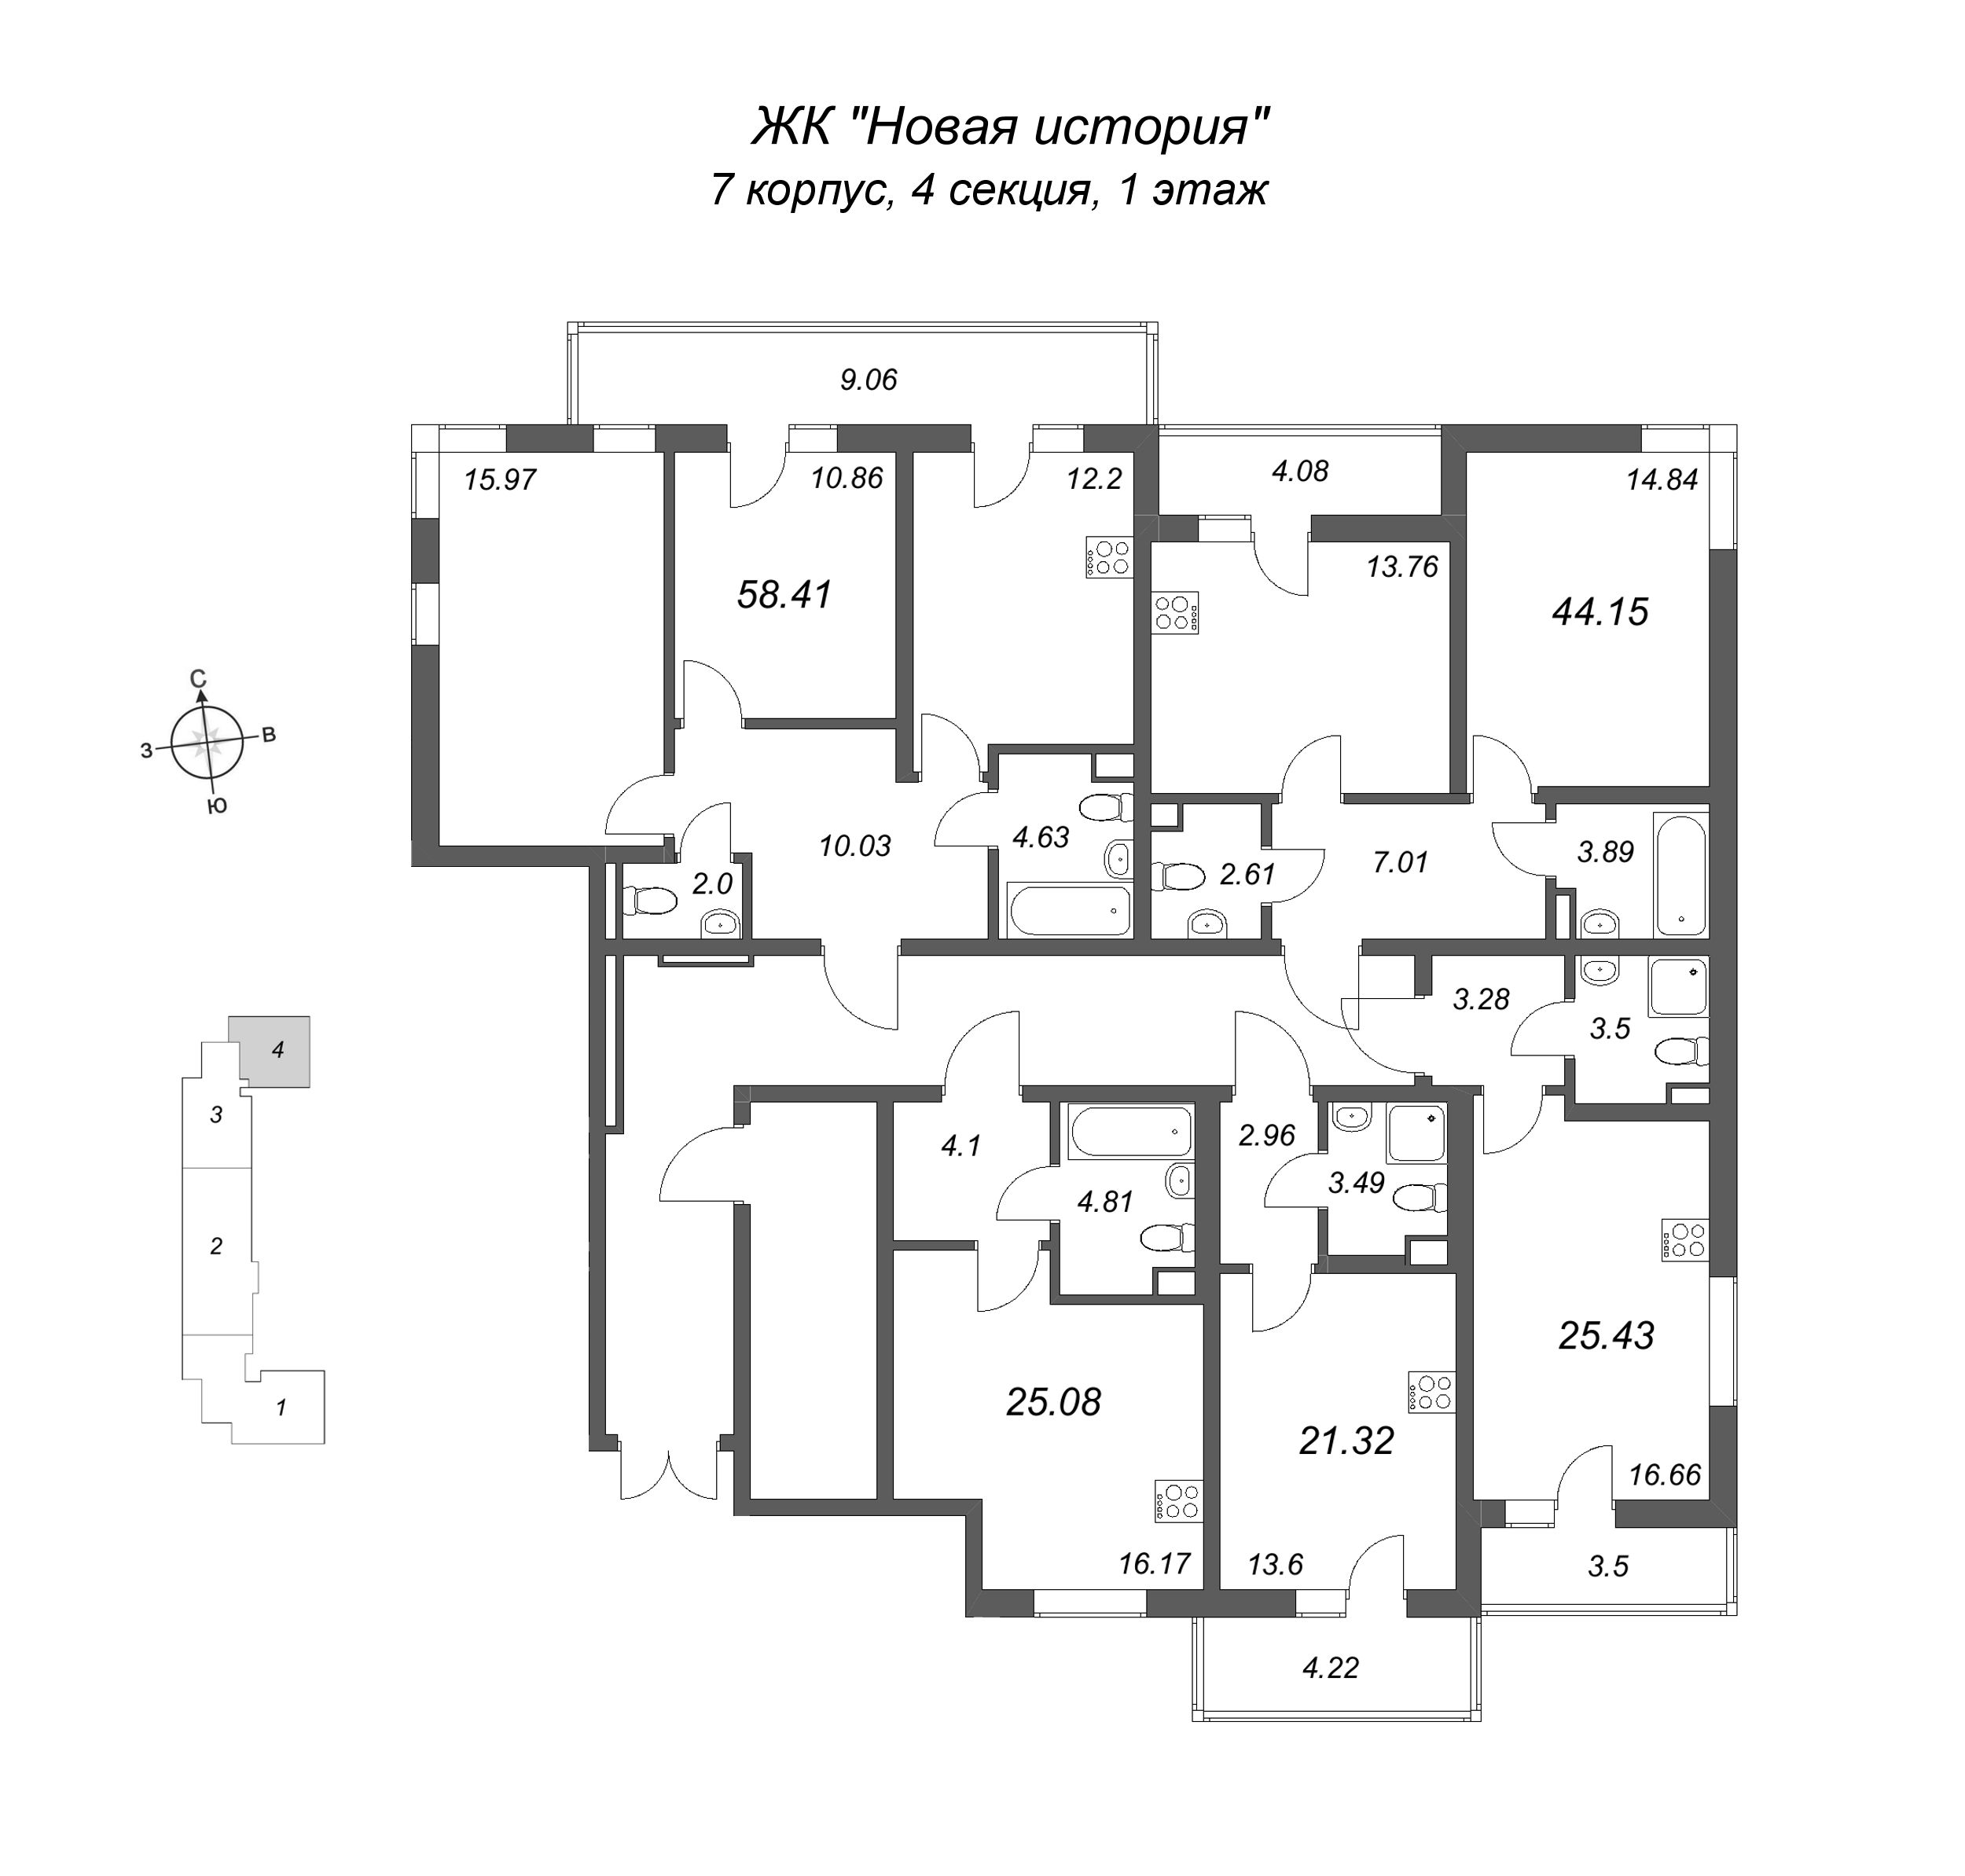 Квартира-студия, 25.08 м² в ЖК "Новая история" - планировка этажа